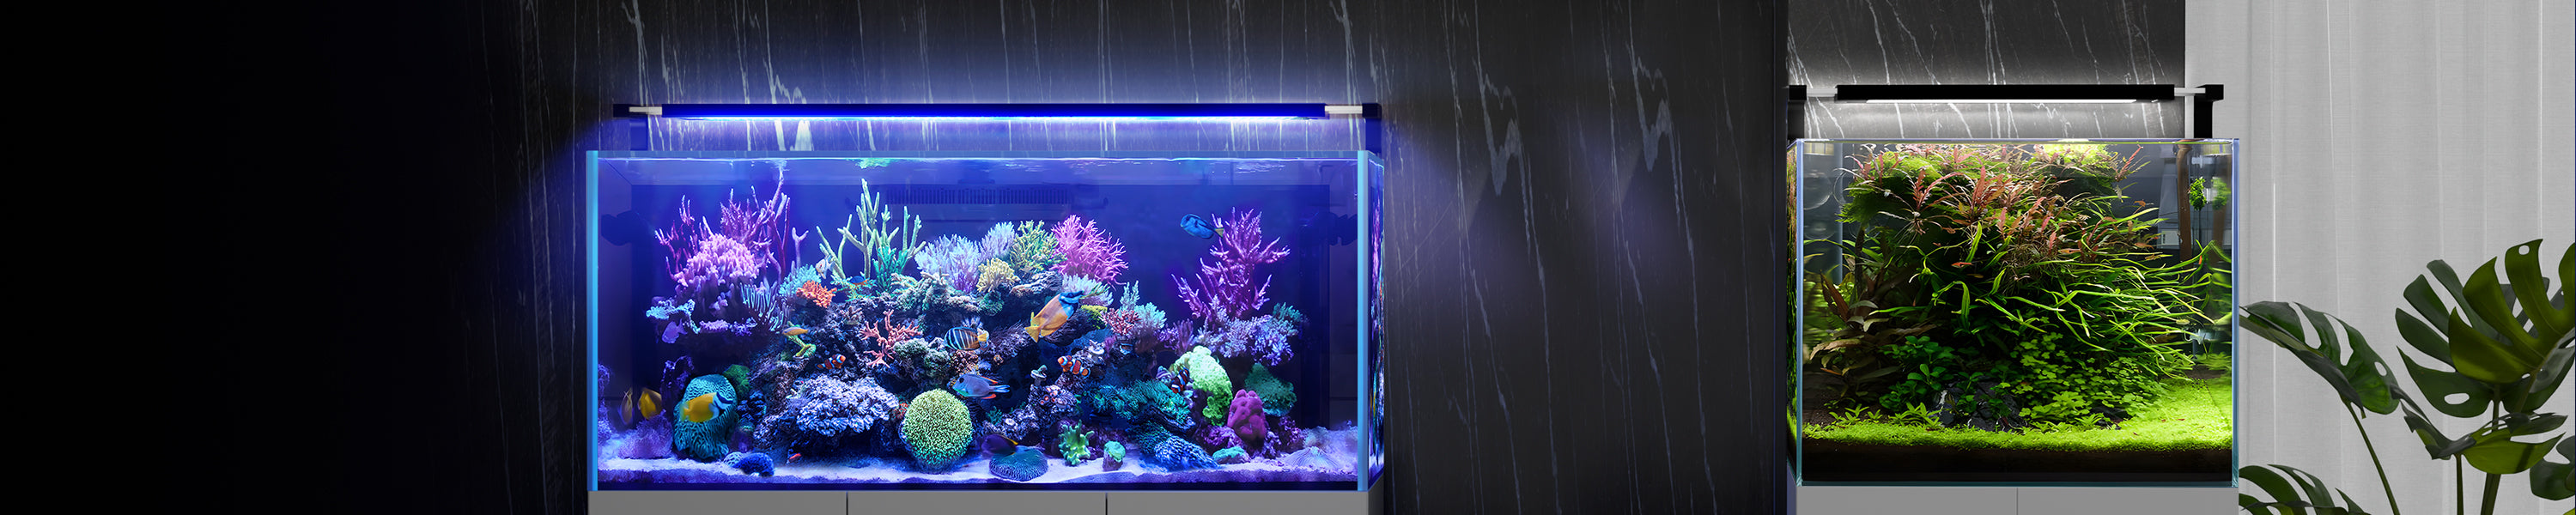 App-Controlled Full Spectrum LED Aquarium Light